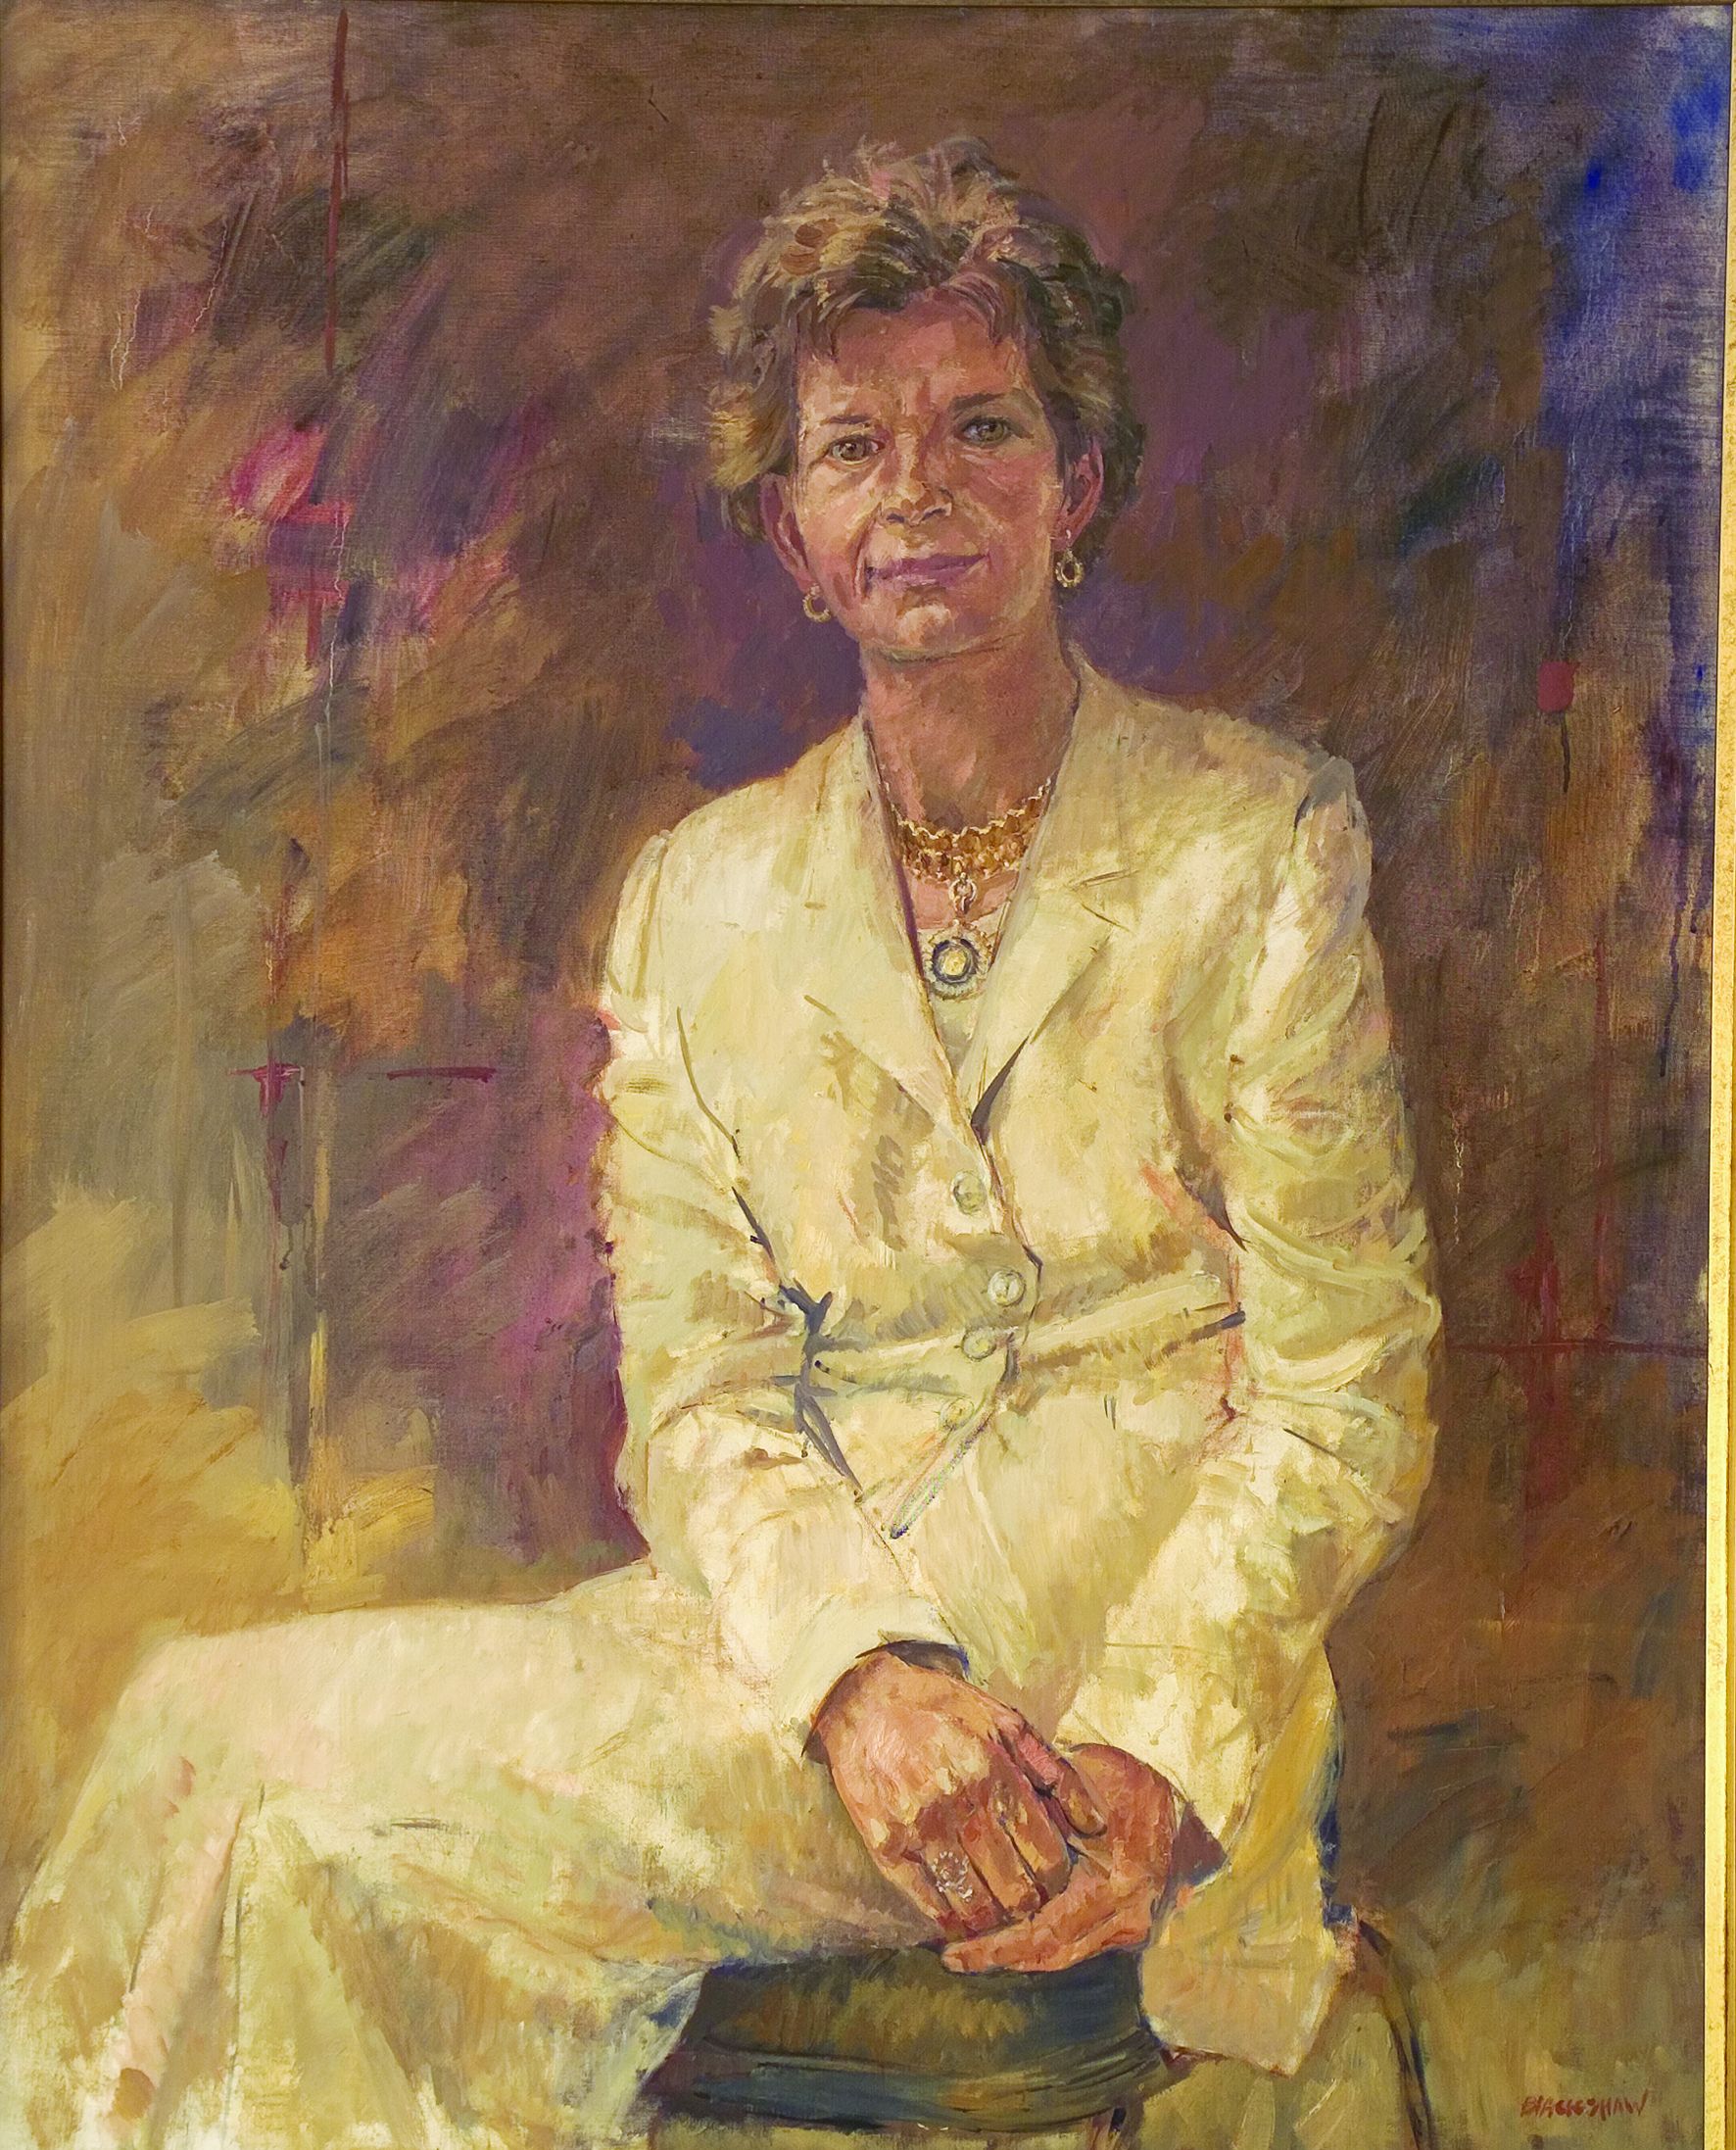 Irish President Mary Robinson portrait by Basil Blackshaw at Áras an Uachtaráin. Dublin, Ireland.